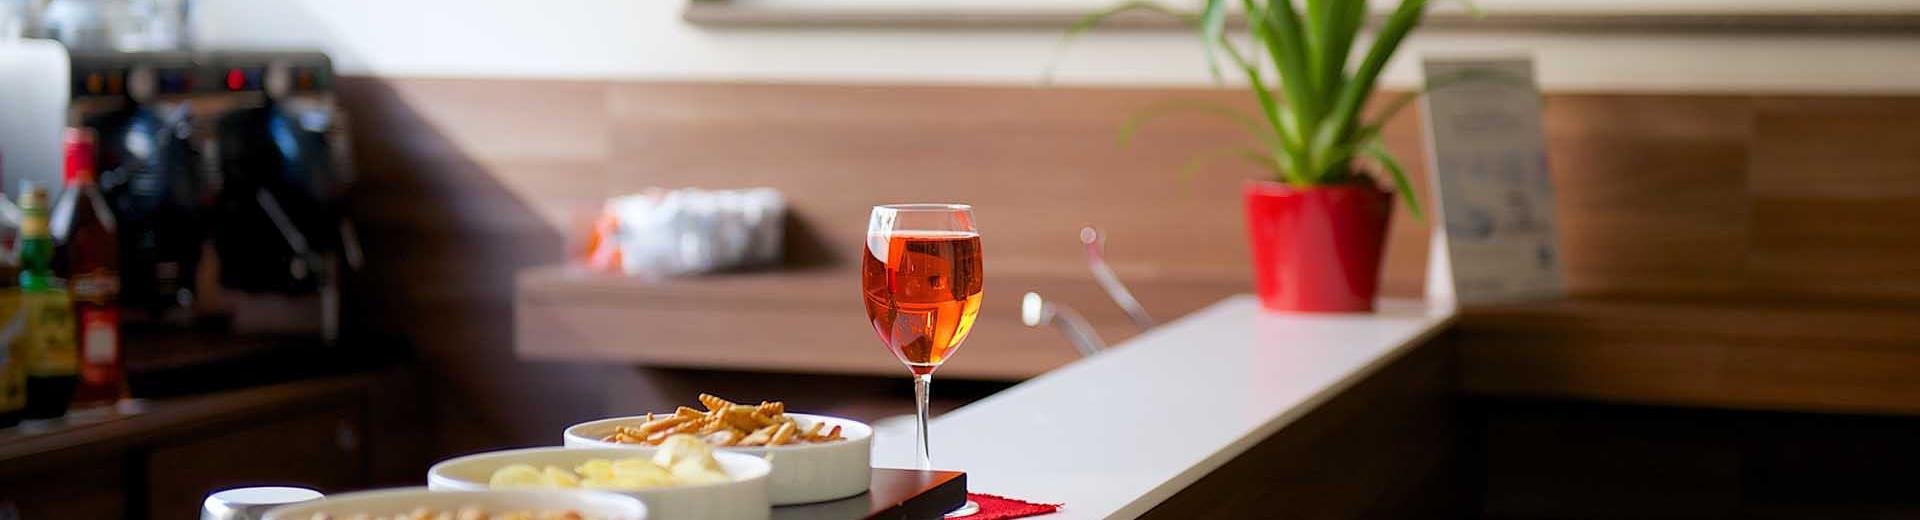 Bar e gustosi aperitivi a Torino -  Best Western Hotel Luxor 4 stelle